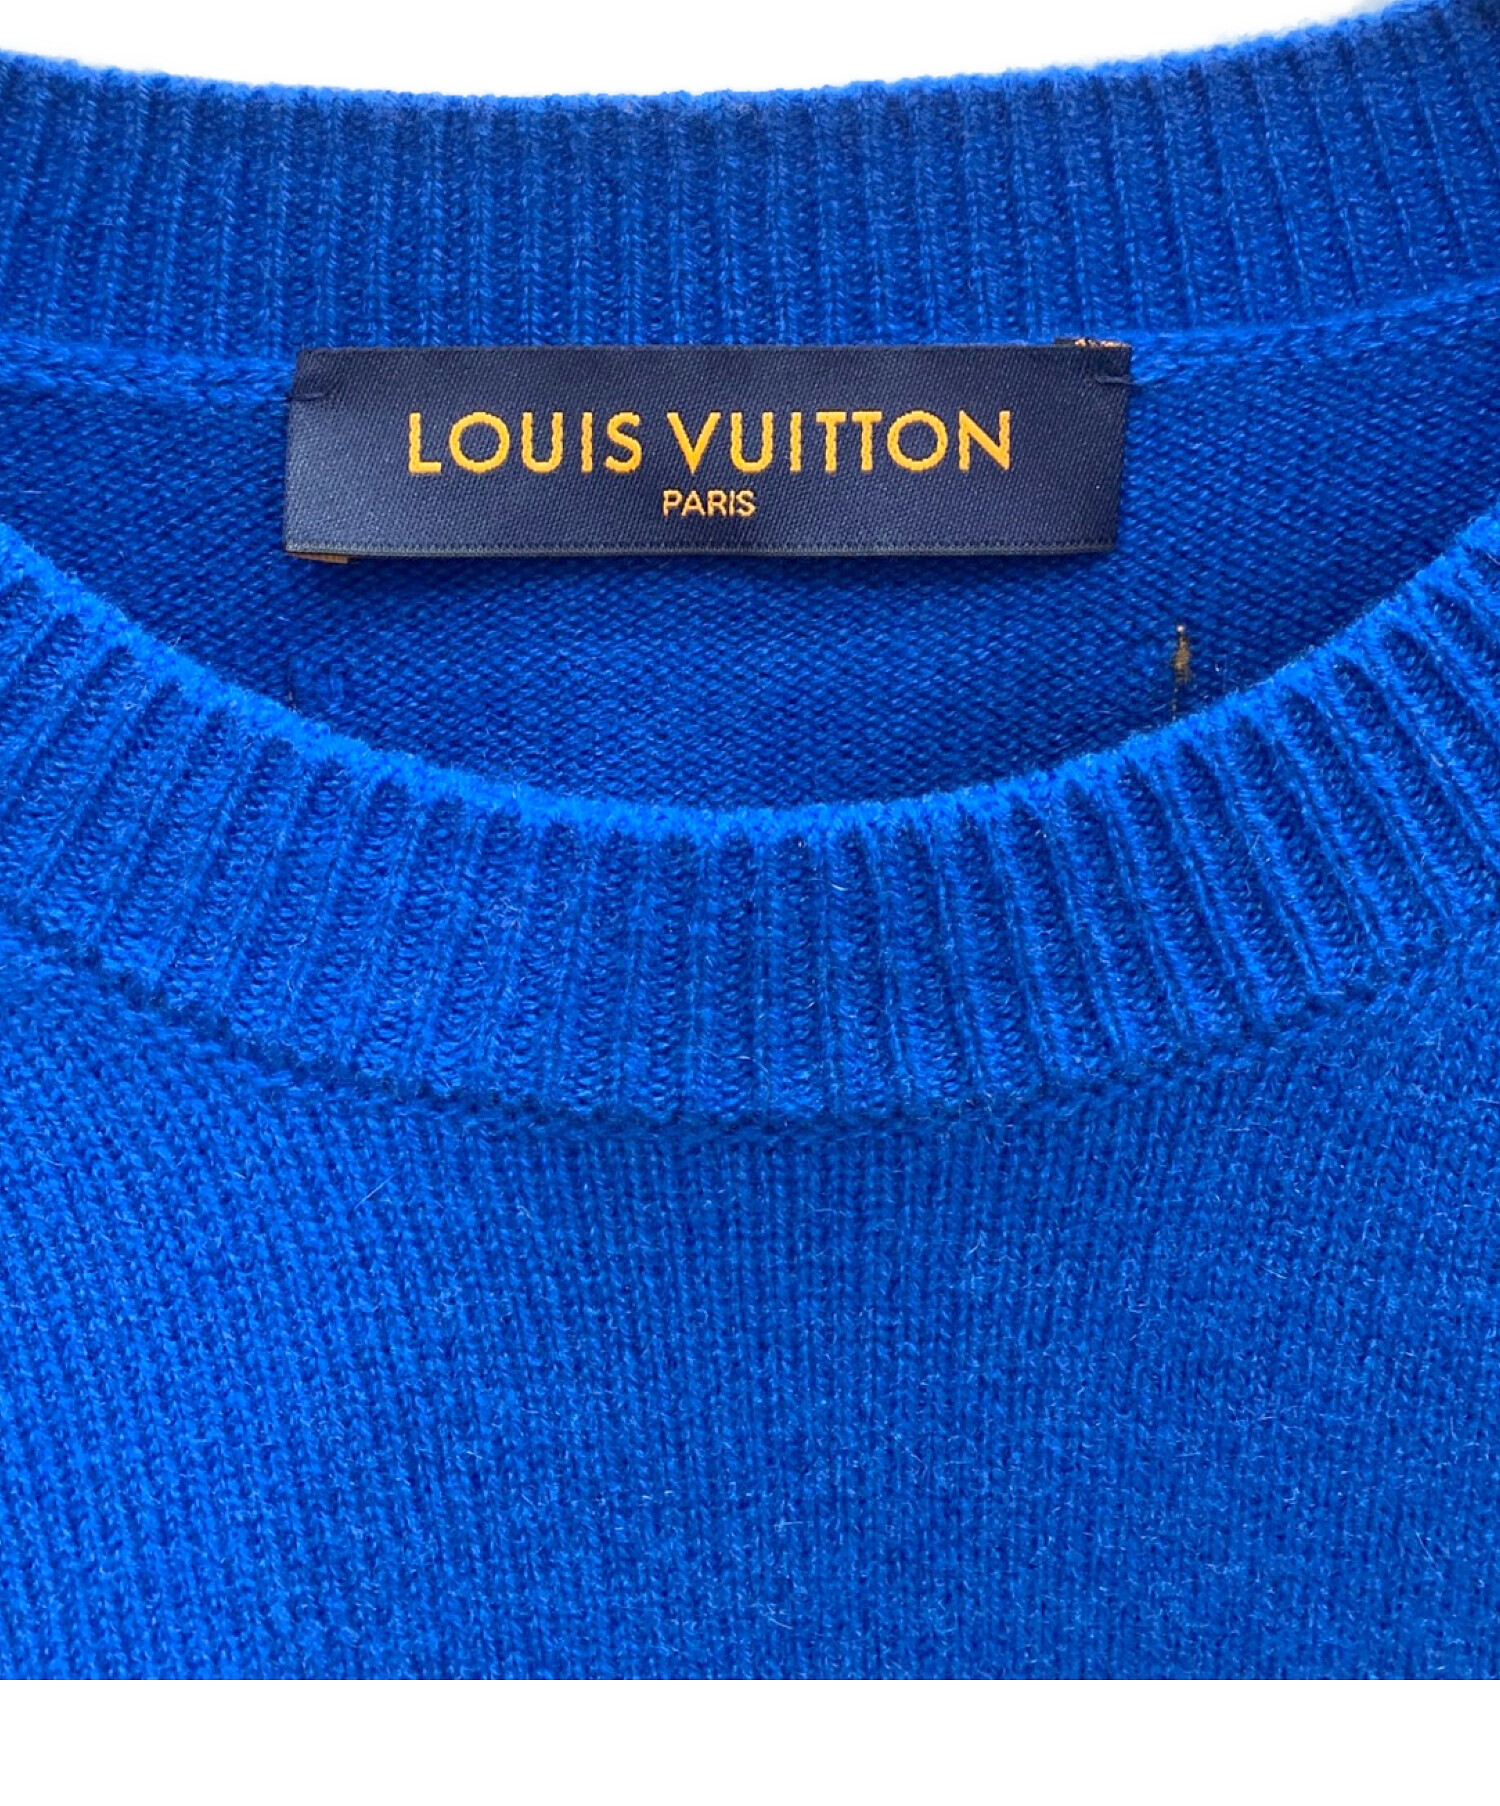 LOUIS VUITTON (ルイ ヴィトン) LVカフスカシミヤニットセーター ブルー サイズ:M